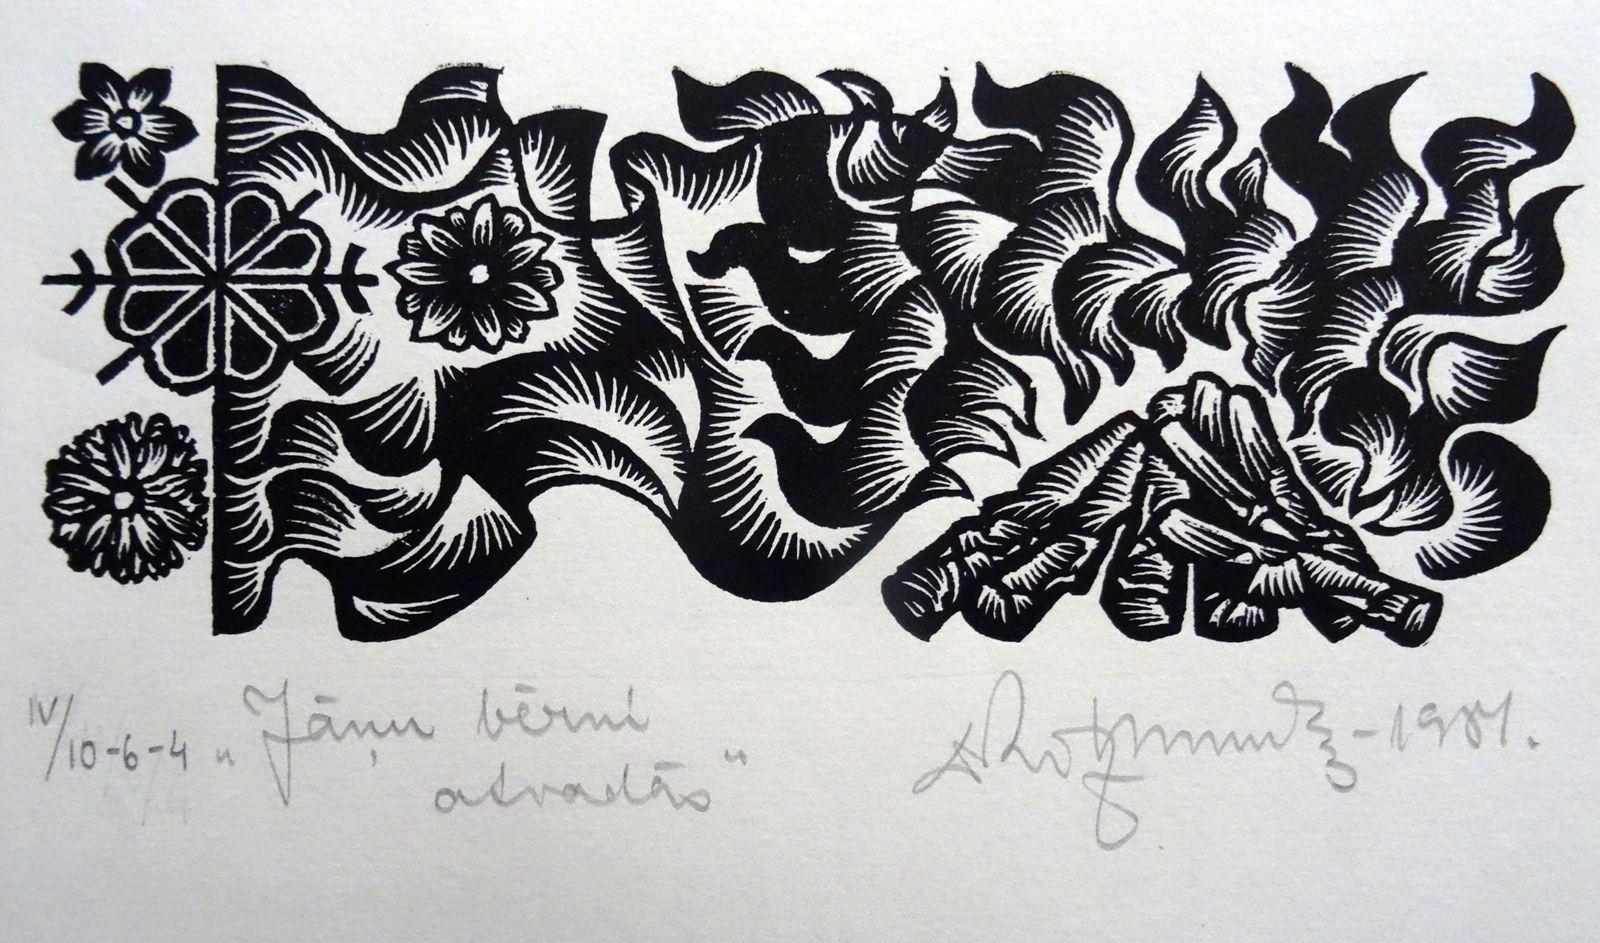 Kinder der Sonnenwende. 1984. Papier, Linolschnitt, 20x34 cm